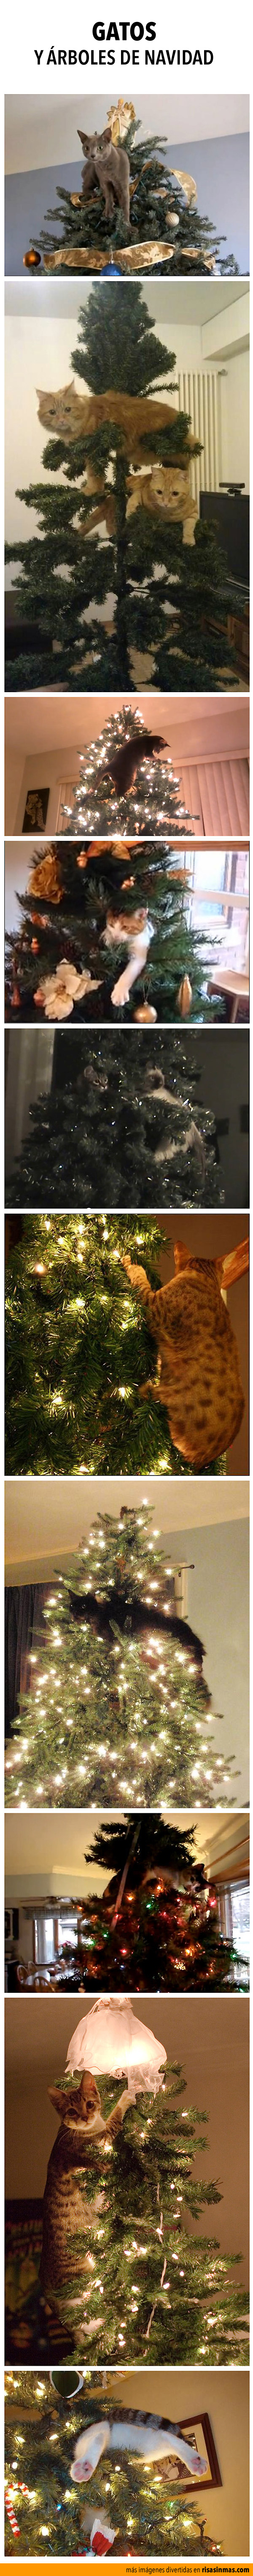 Gatos y árboles de navidad